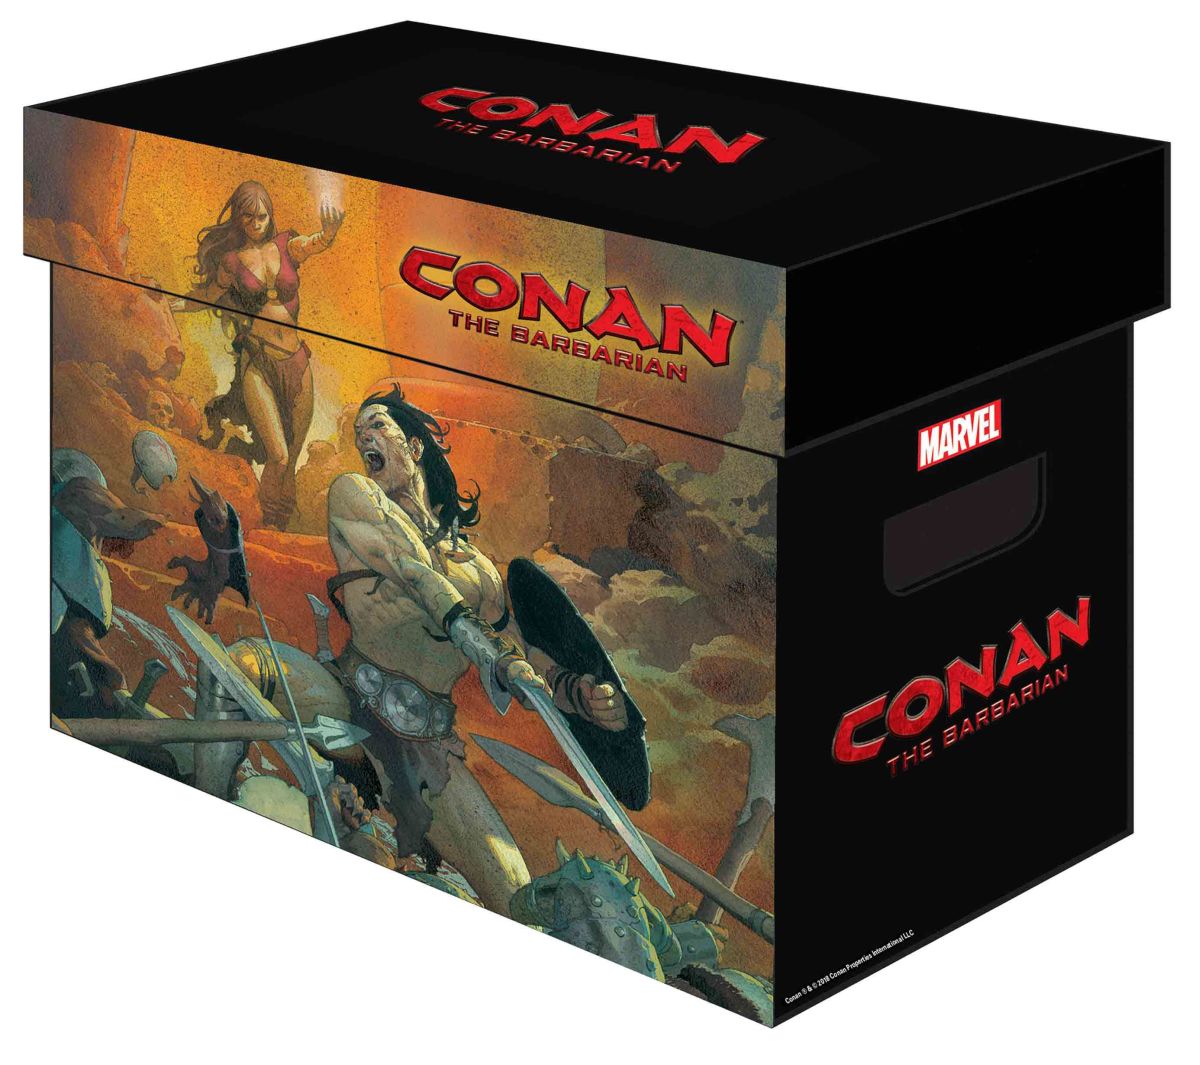 MARVEL GRAPHIC COMIC BOX: CONAN THE BARBARIAN #1